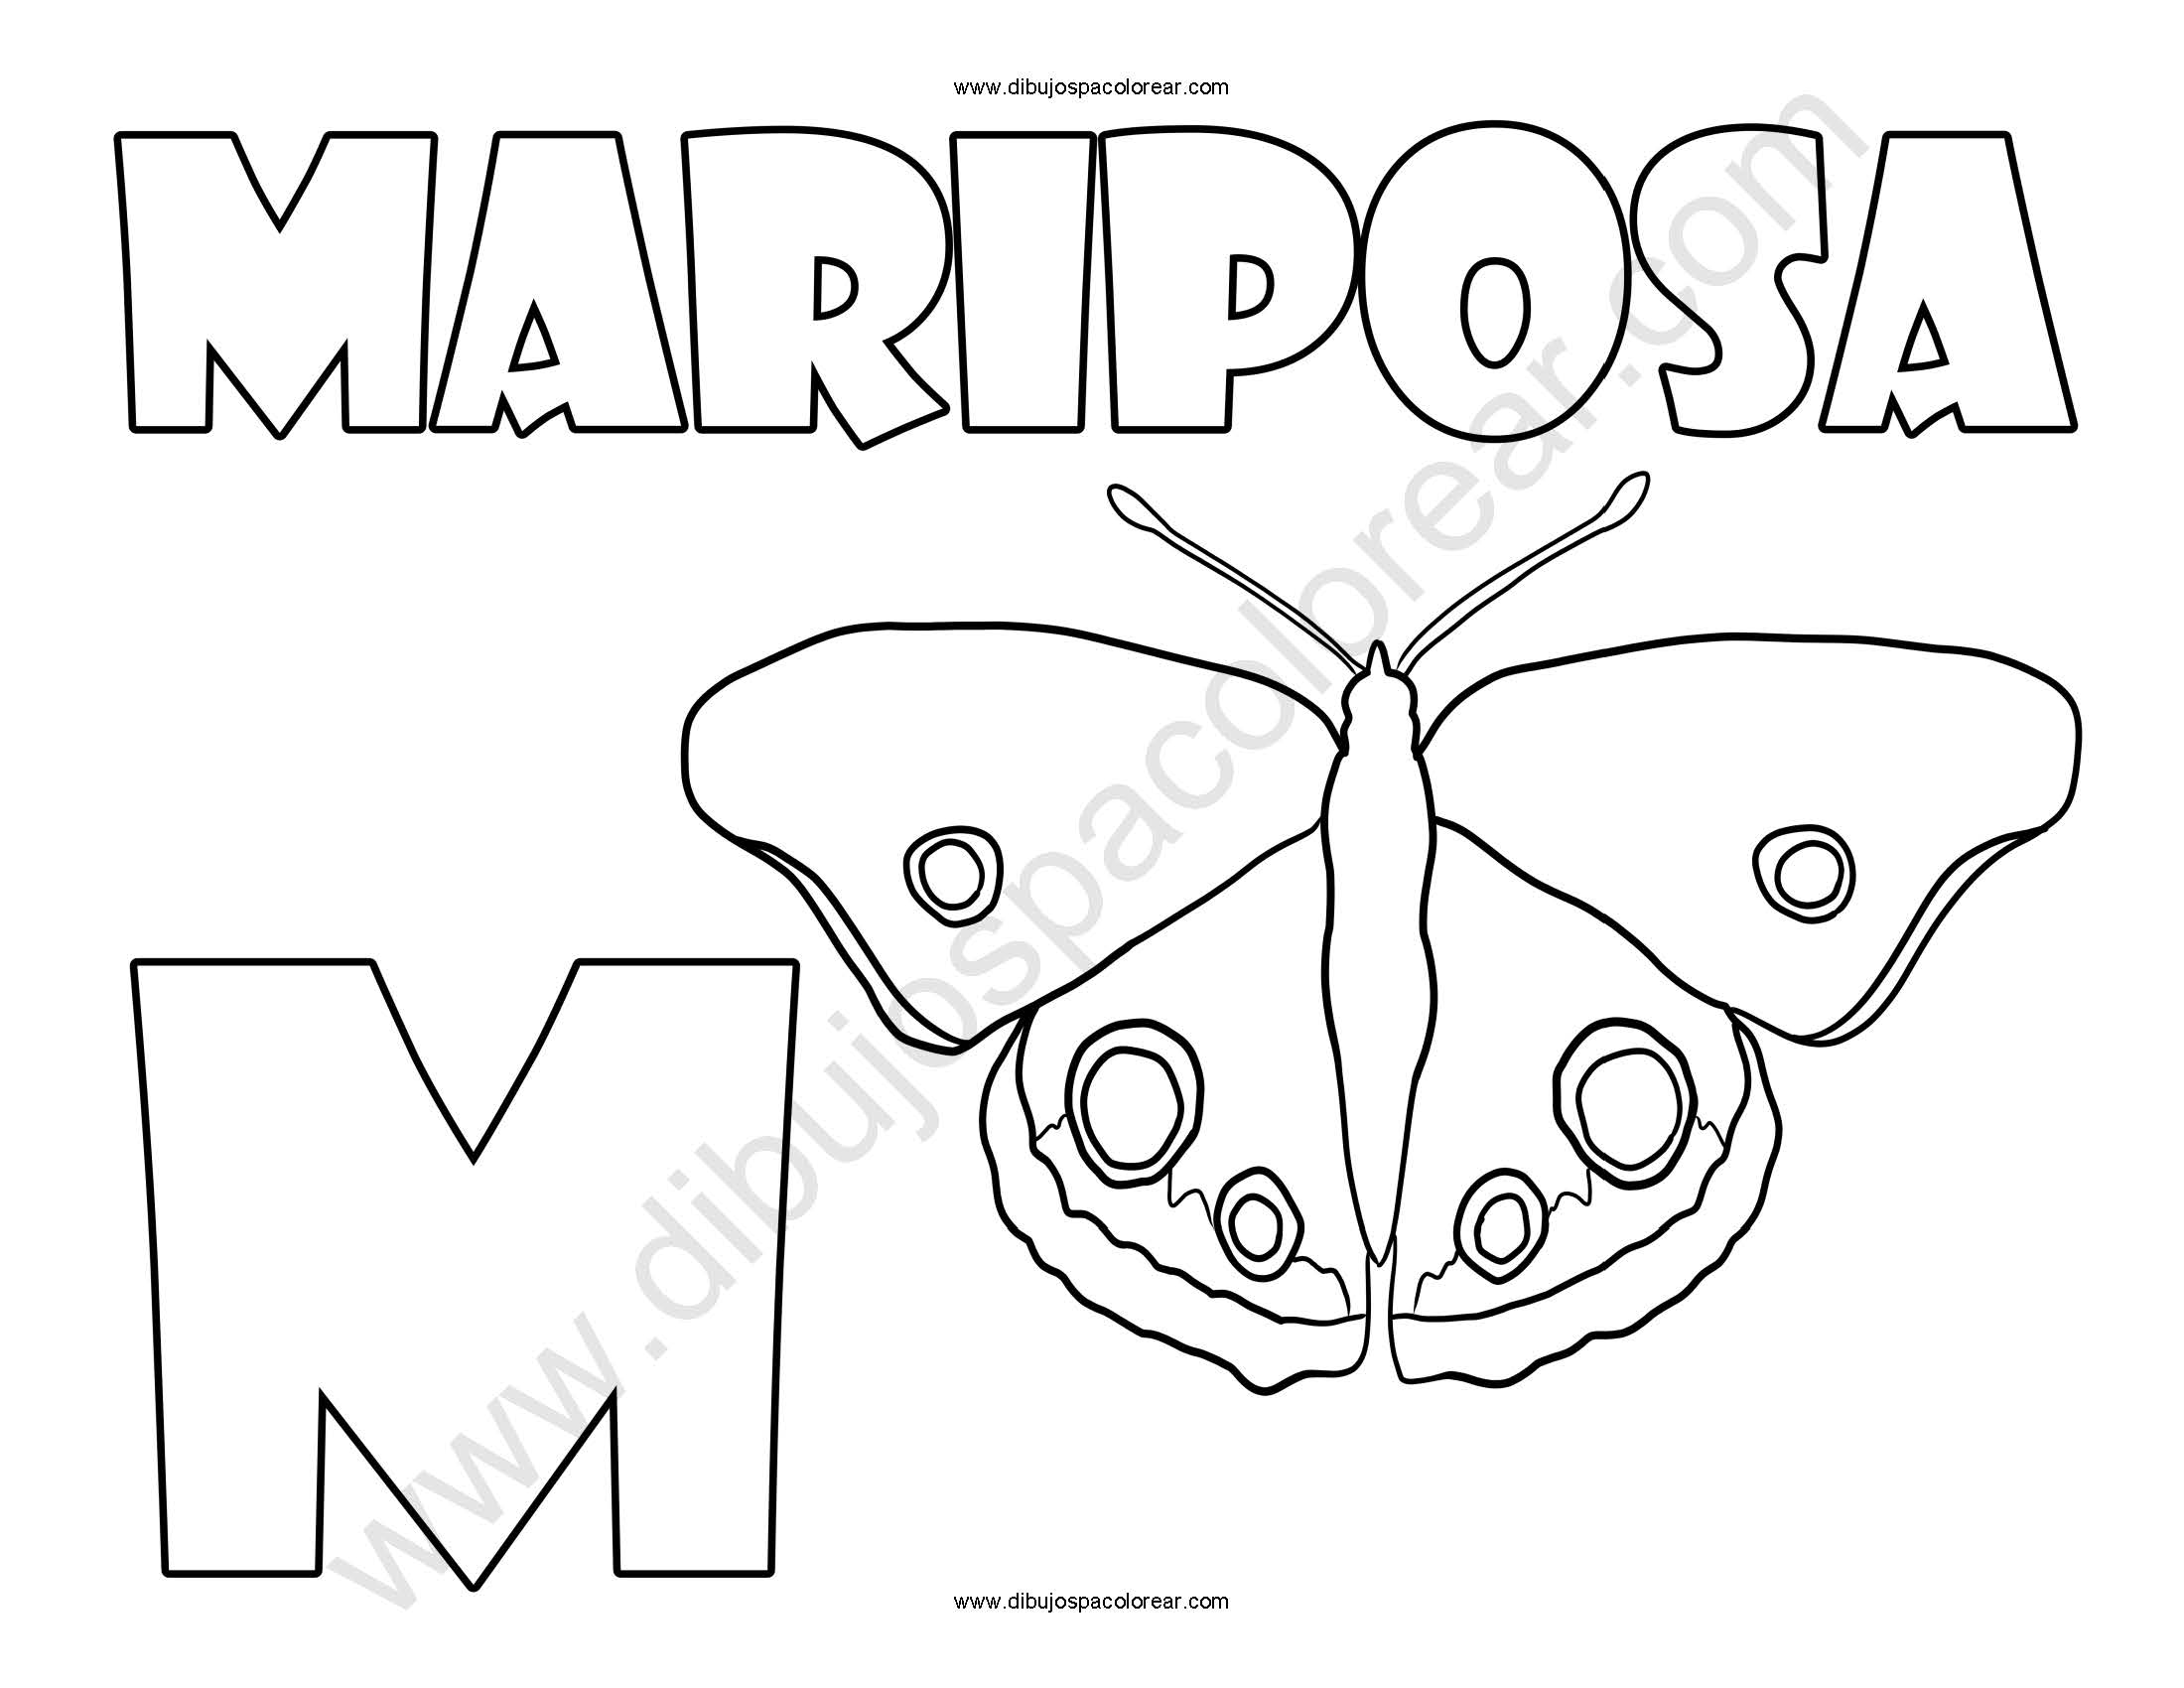 Mariposa letra M abecedario dibujo a color y para colorear